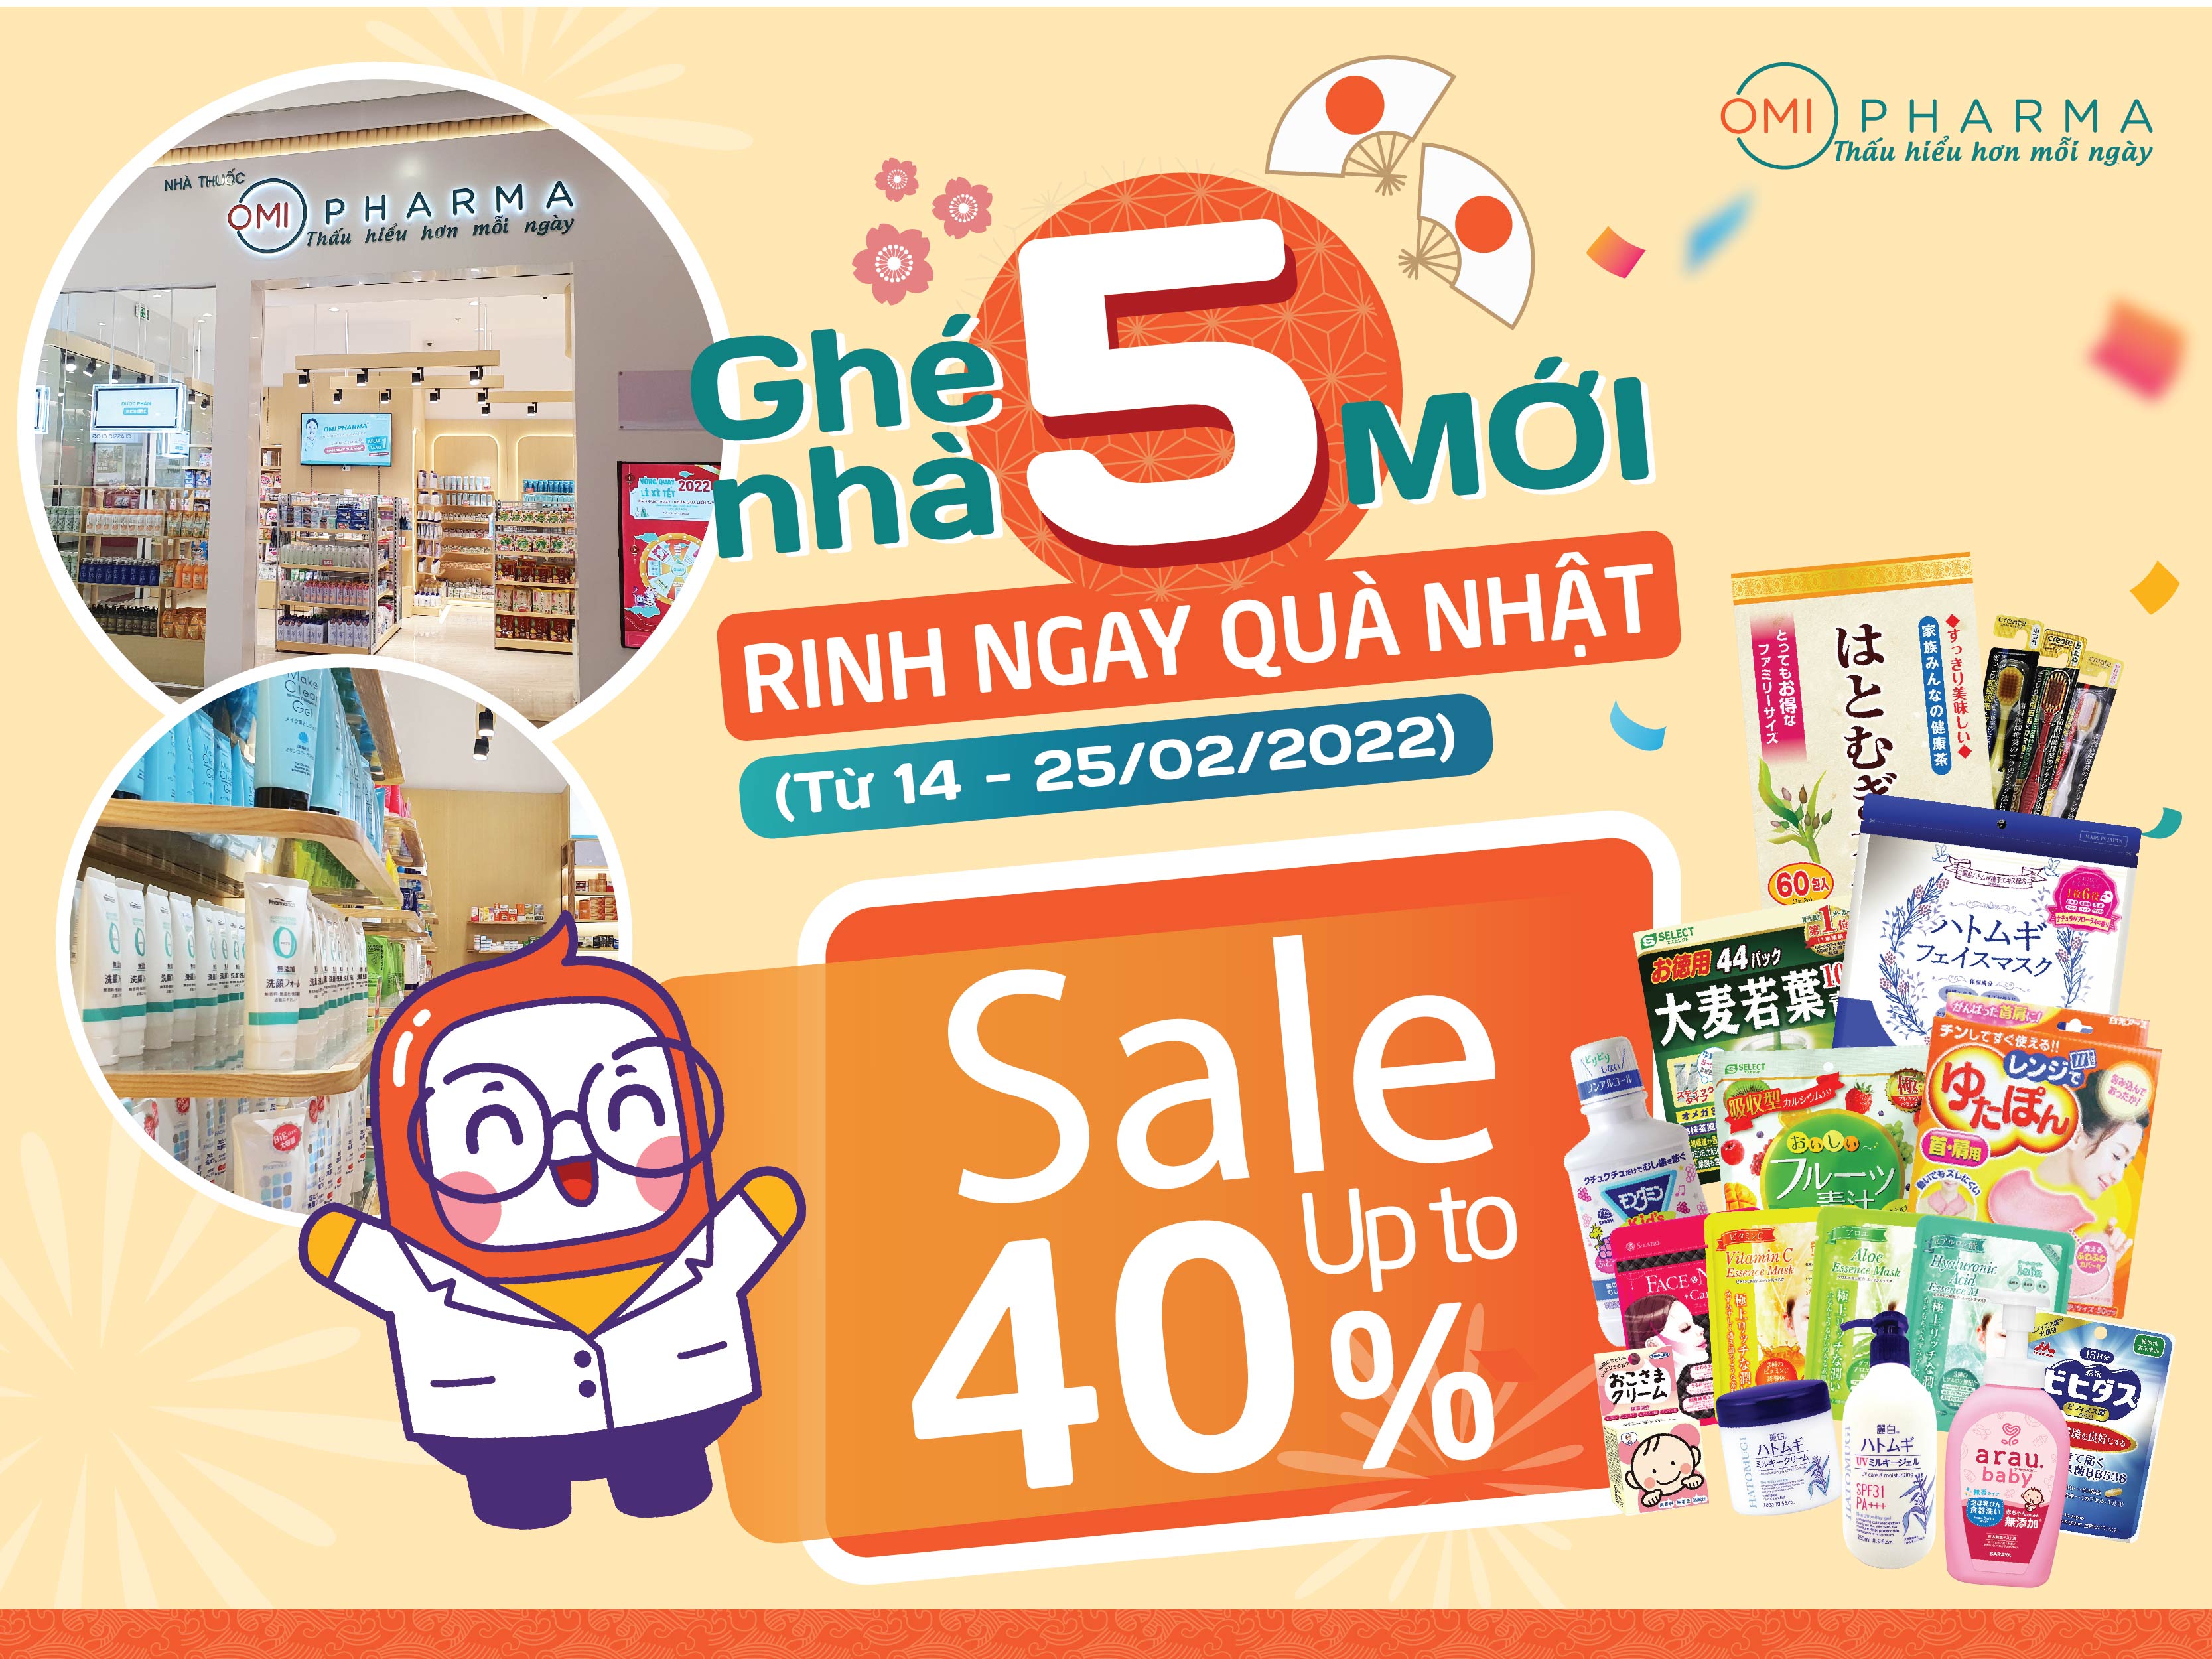 Sale up to 40% hàng ngàn sản phẩm mừng ra mắt Omi Pharma cơ sở 5